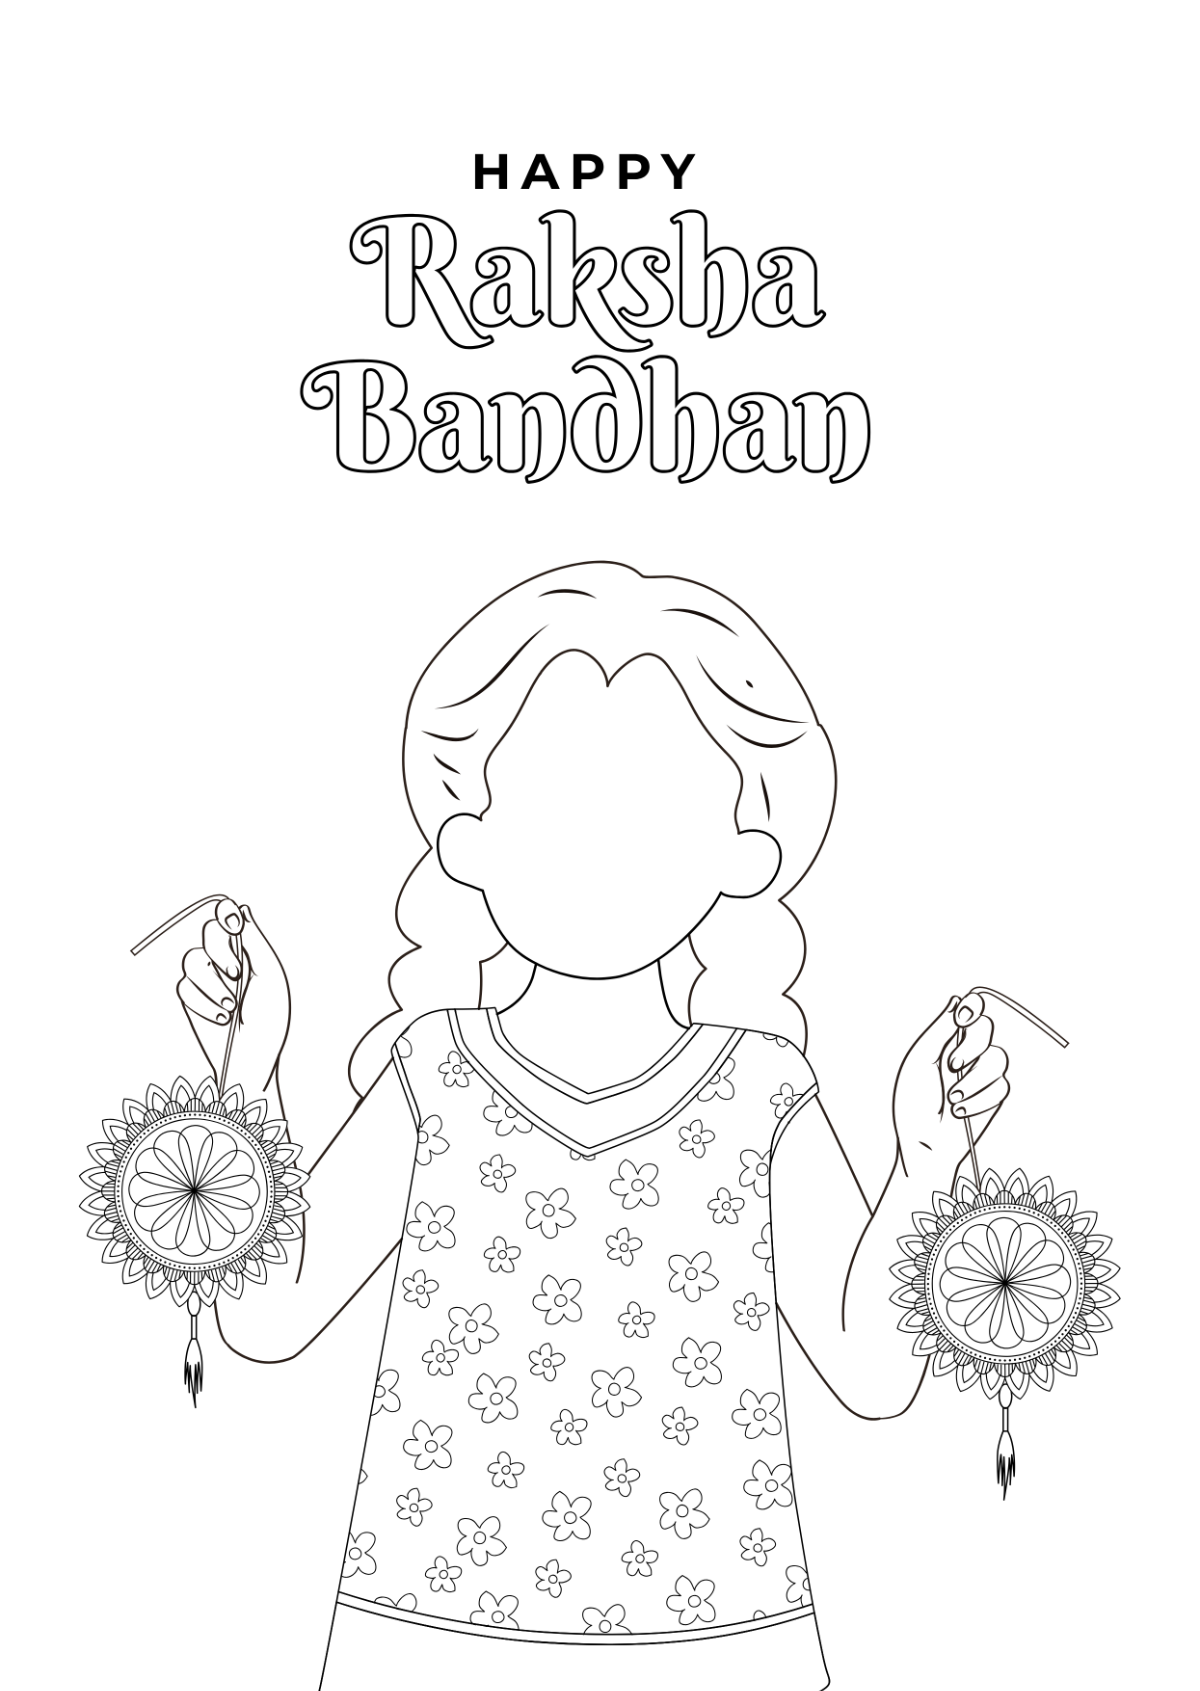 Raksha Bandhan Drawing for Kids